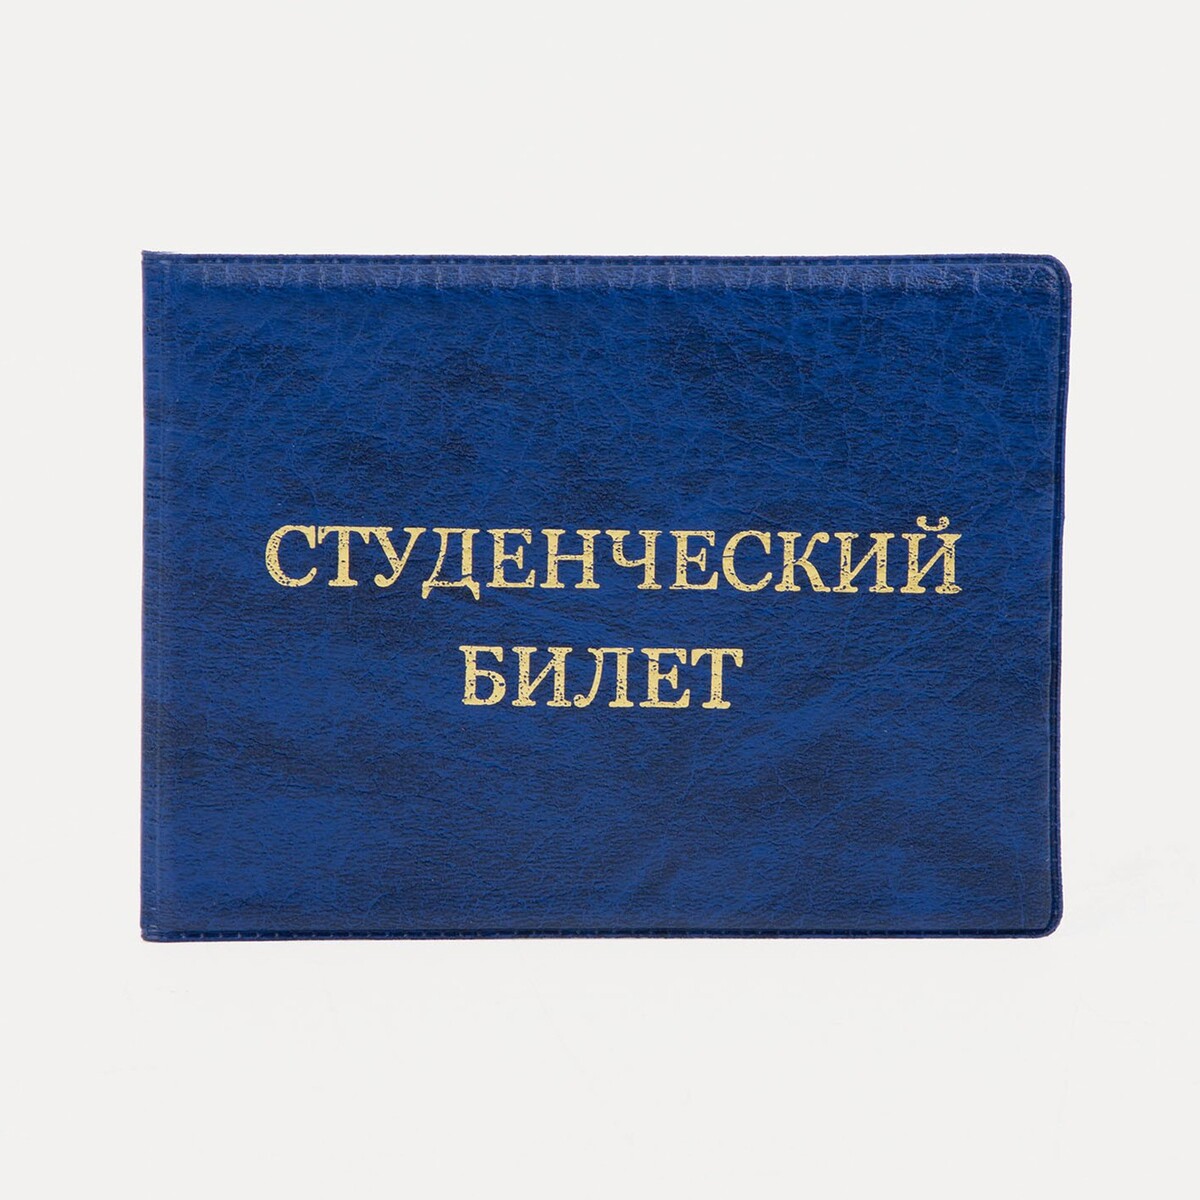 Обложка для студенческого билета, цвет синий обложка для студенческого спб мосты и крепость сб2018 044